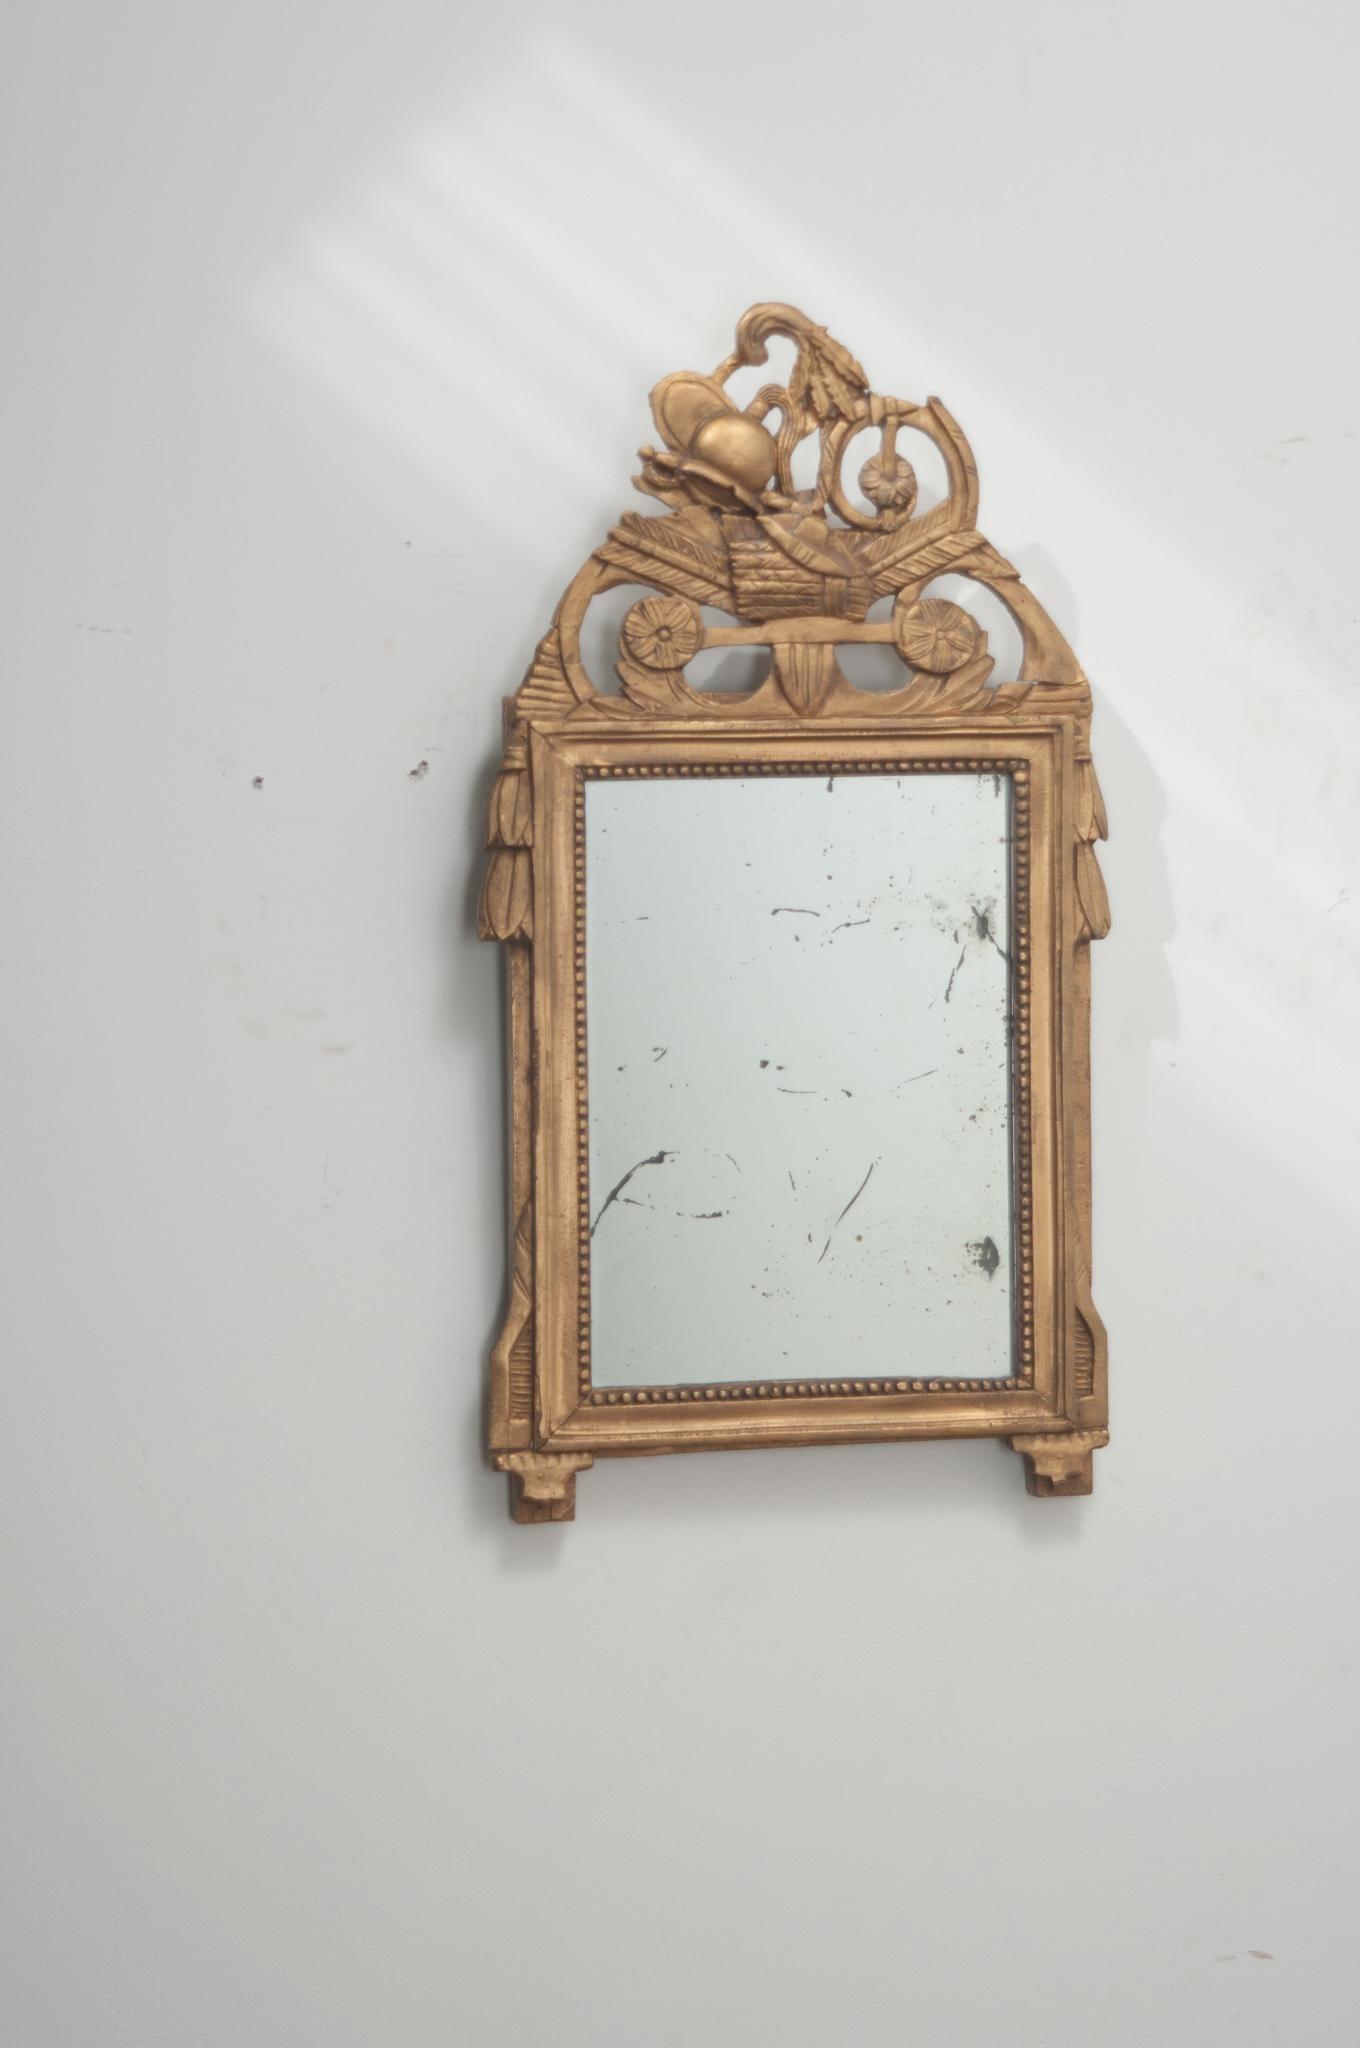 Un petit miroir français de style Louis XVI. Le cadre sculpté, peint et doré, est orné d'un écusson percé représentant un casque militaire, une épée, un bouclier, un carquois et une hache. La plaque de miroir d'origine est entourée de la garniture